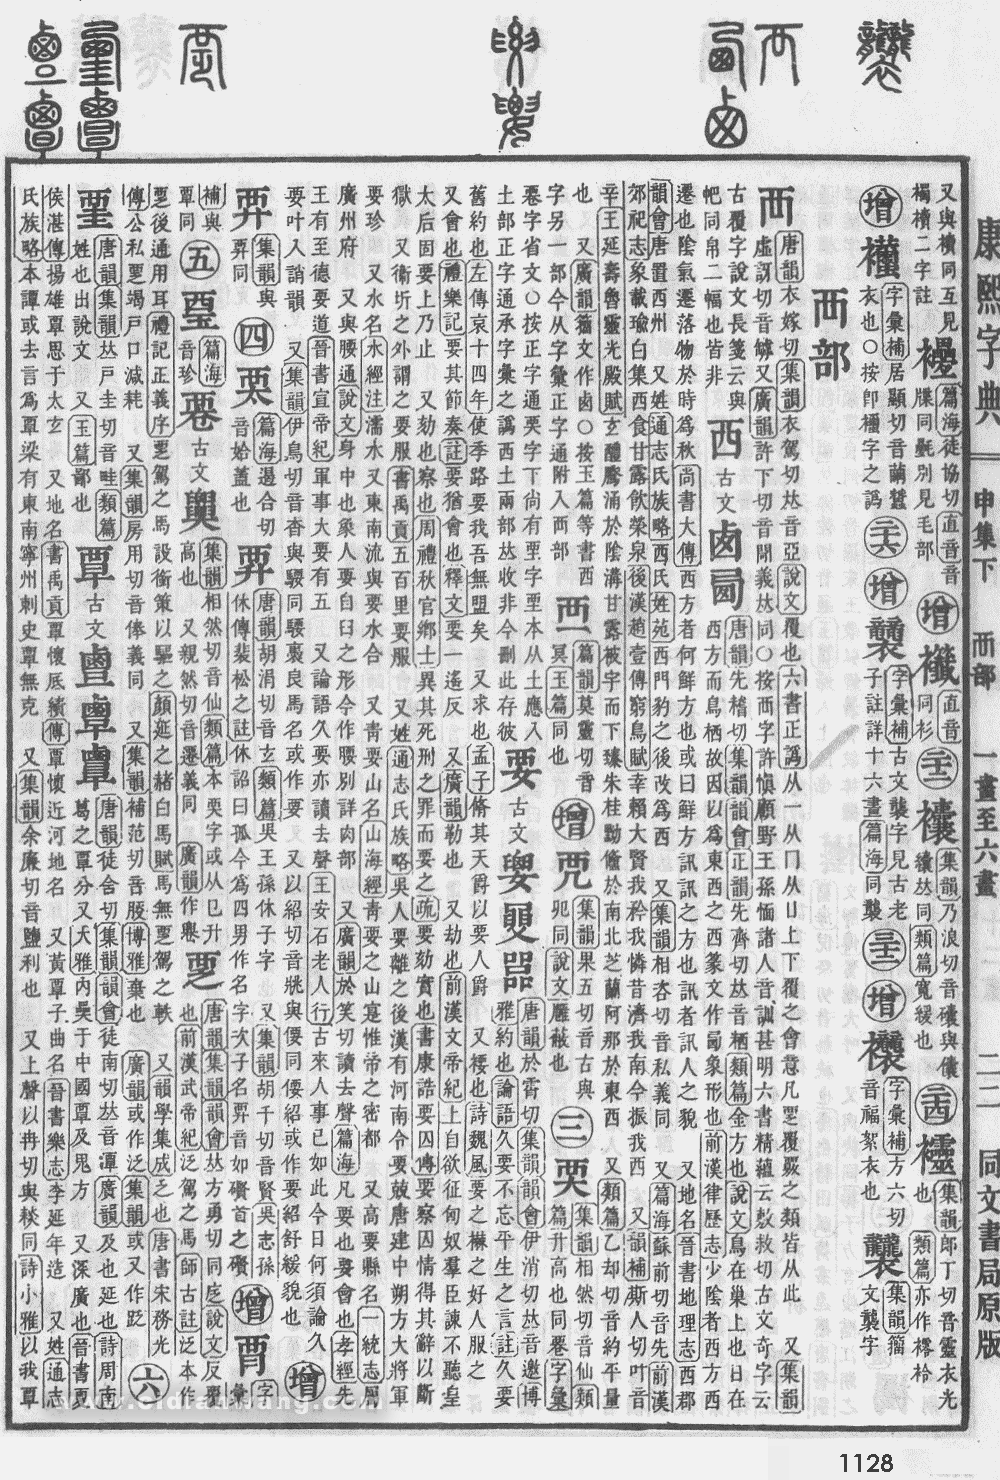 康熙字典掃描版第1128頁